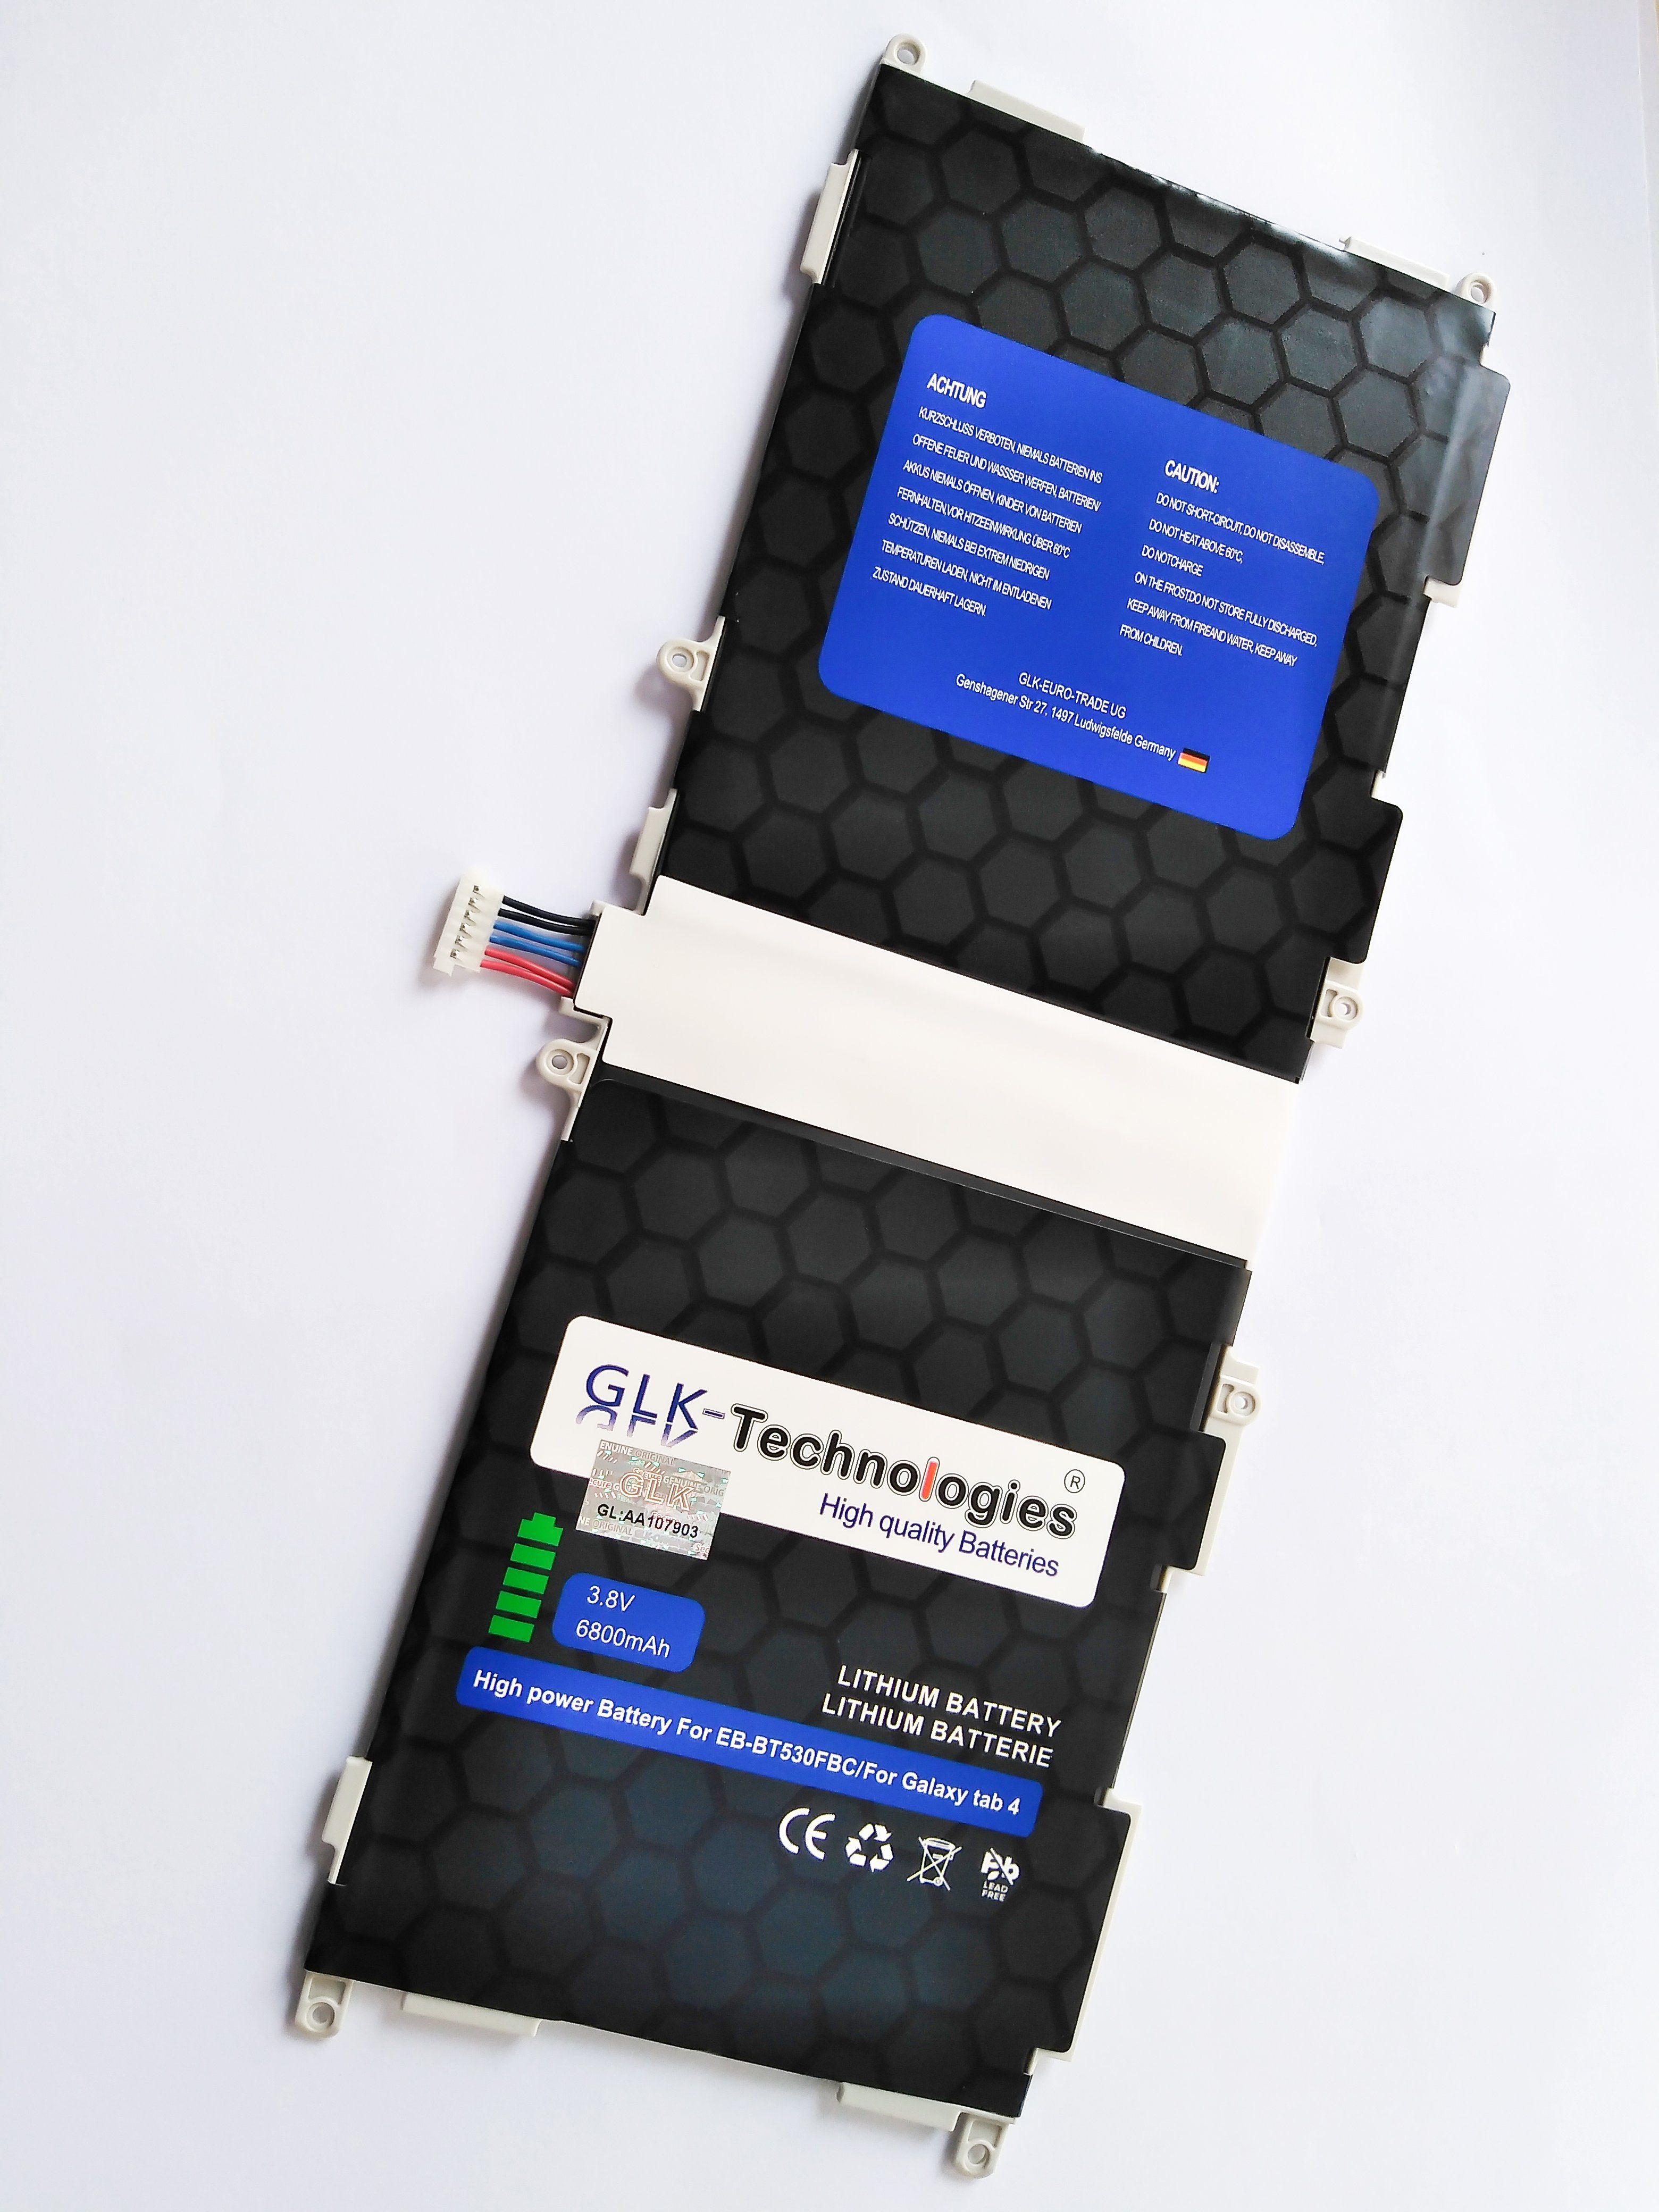 GLK-Technologies GLK akku Galaxy Tablet-Akku 10.1 für V) T530 tab (3.8 SM-T530NU 4 Werkzeug 6800 mAh T535, Samsung